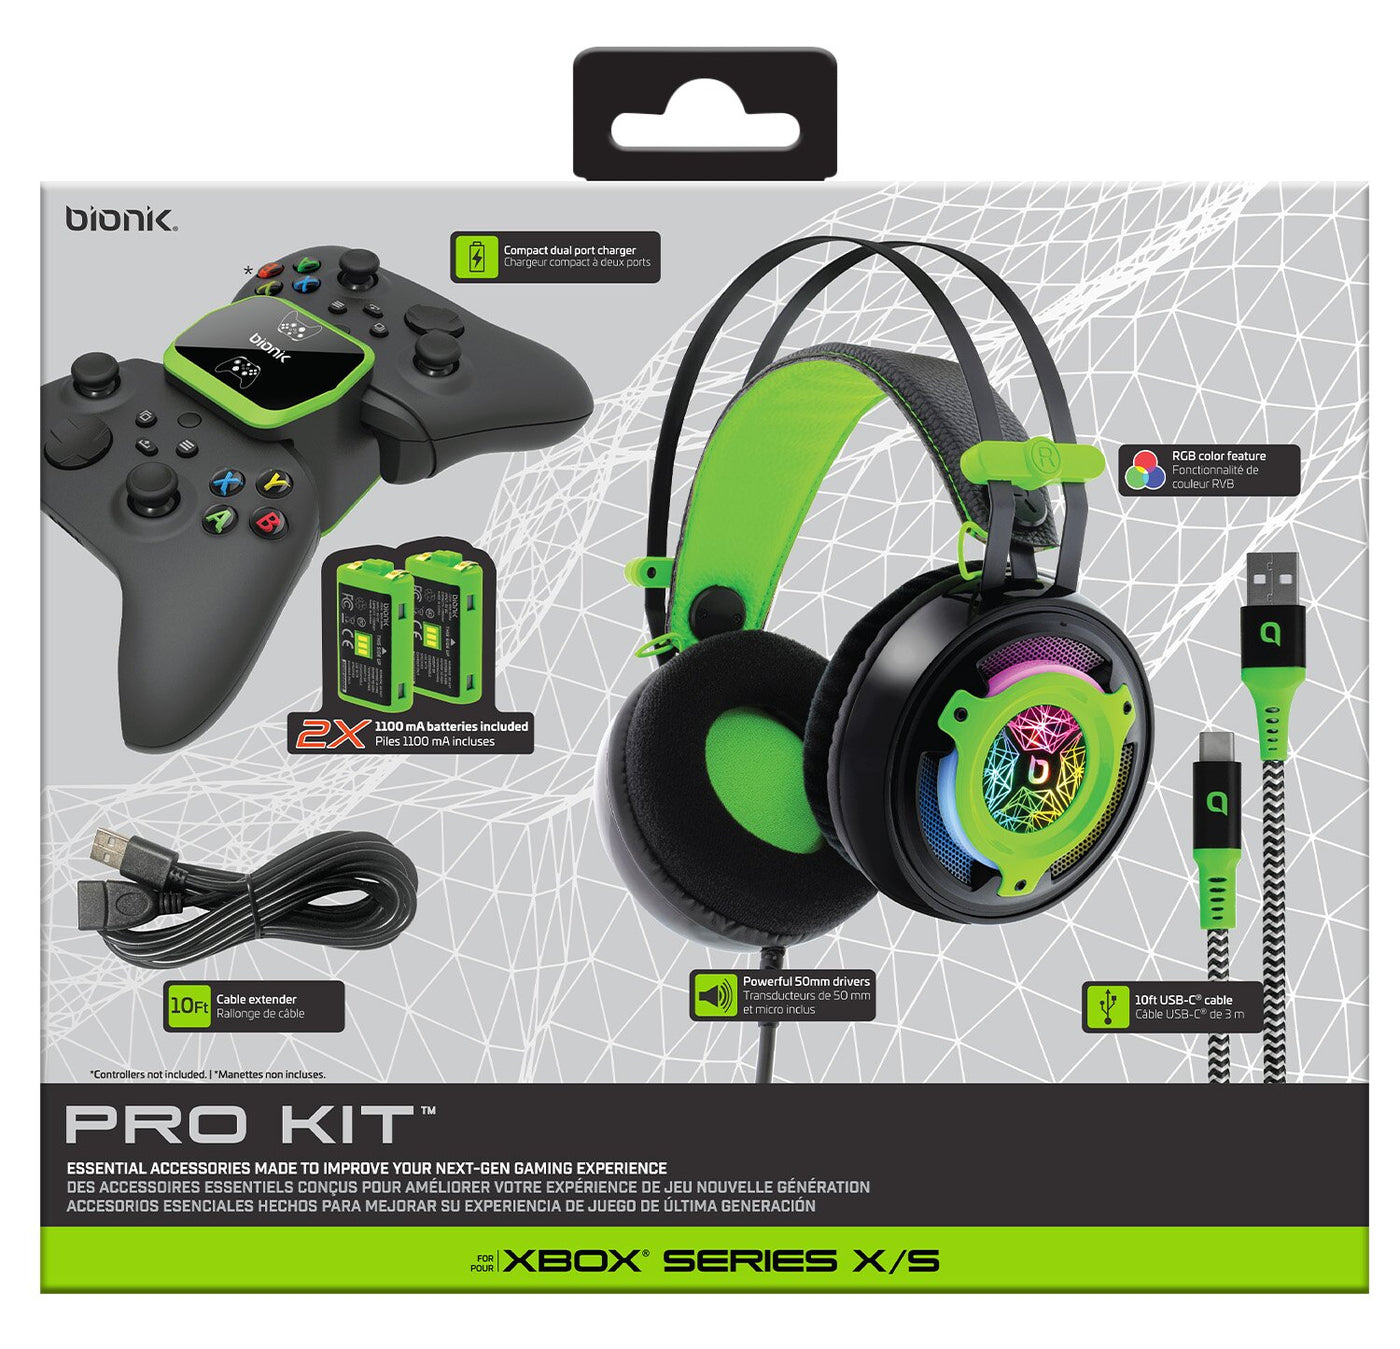 Bionik Xbox Series X/S Pro Kit Essential Accessories